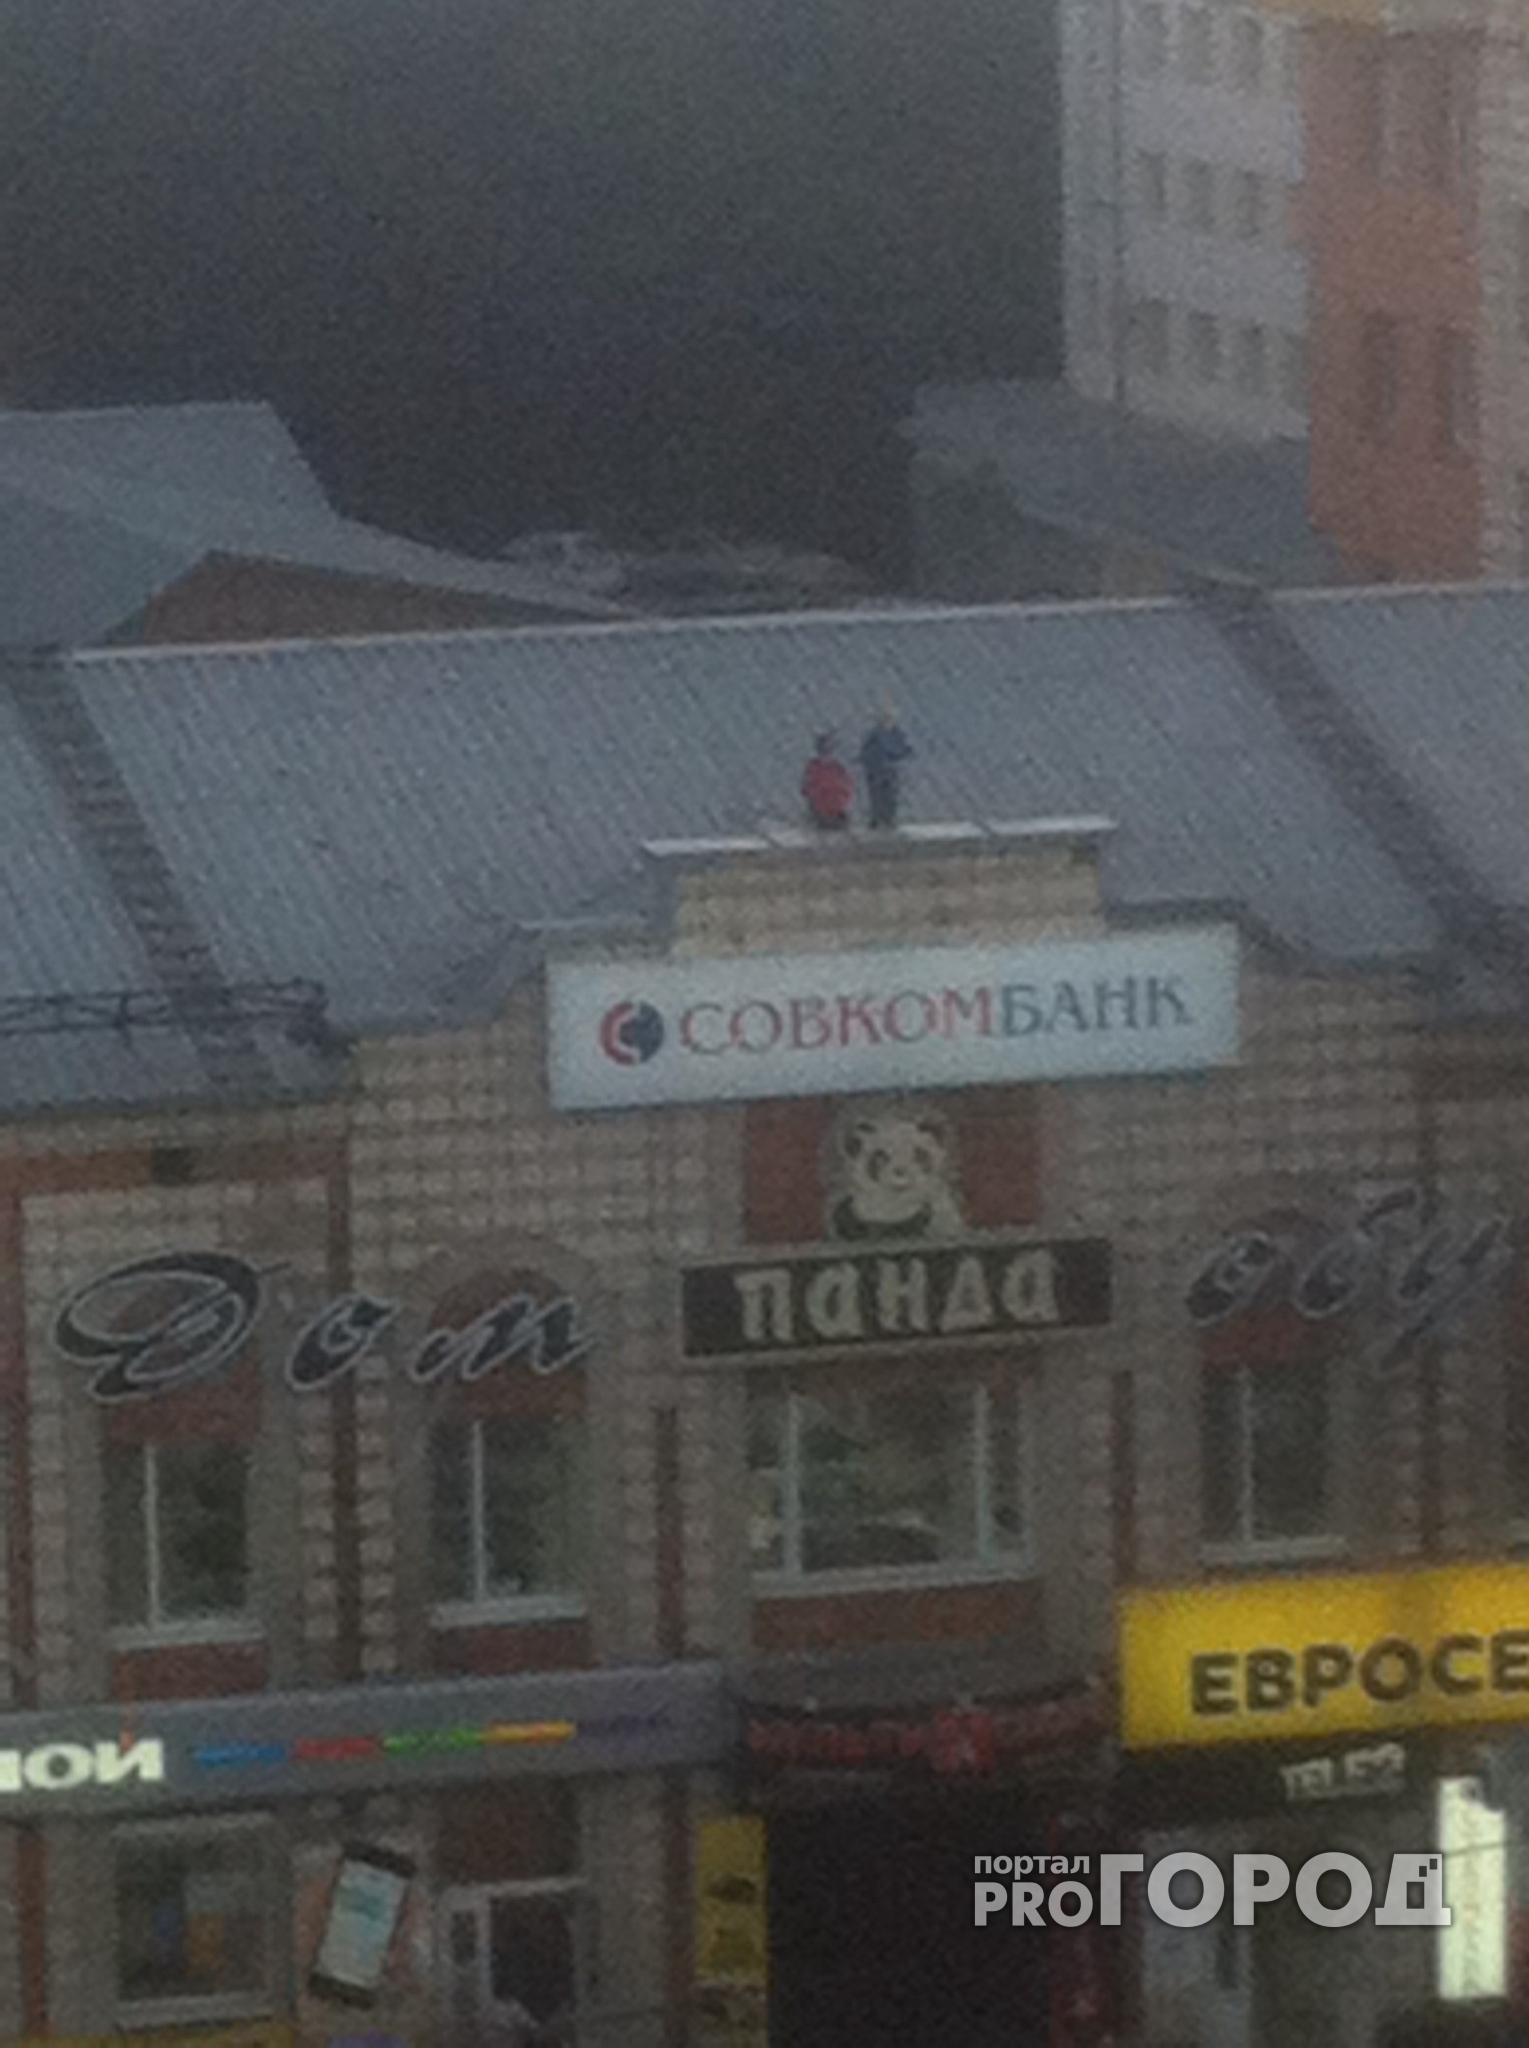 Прямо в центре Сыктывкара два ребёнка балансировали на узком парапете (фото)